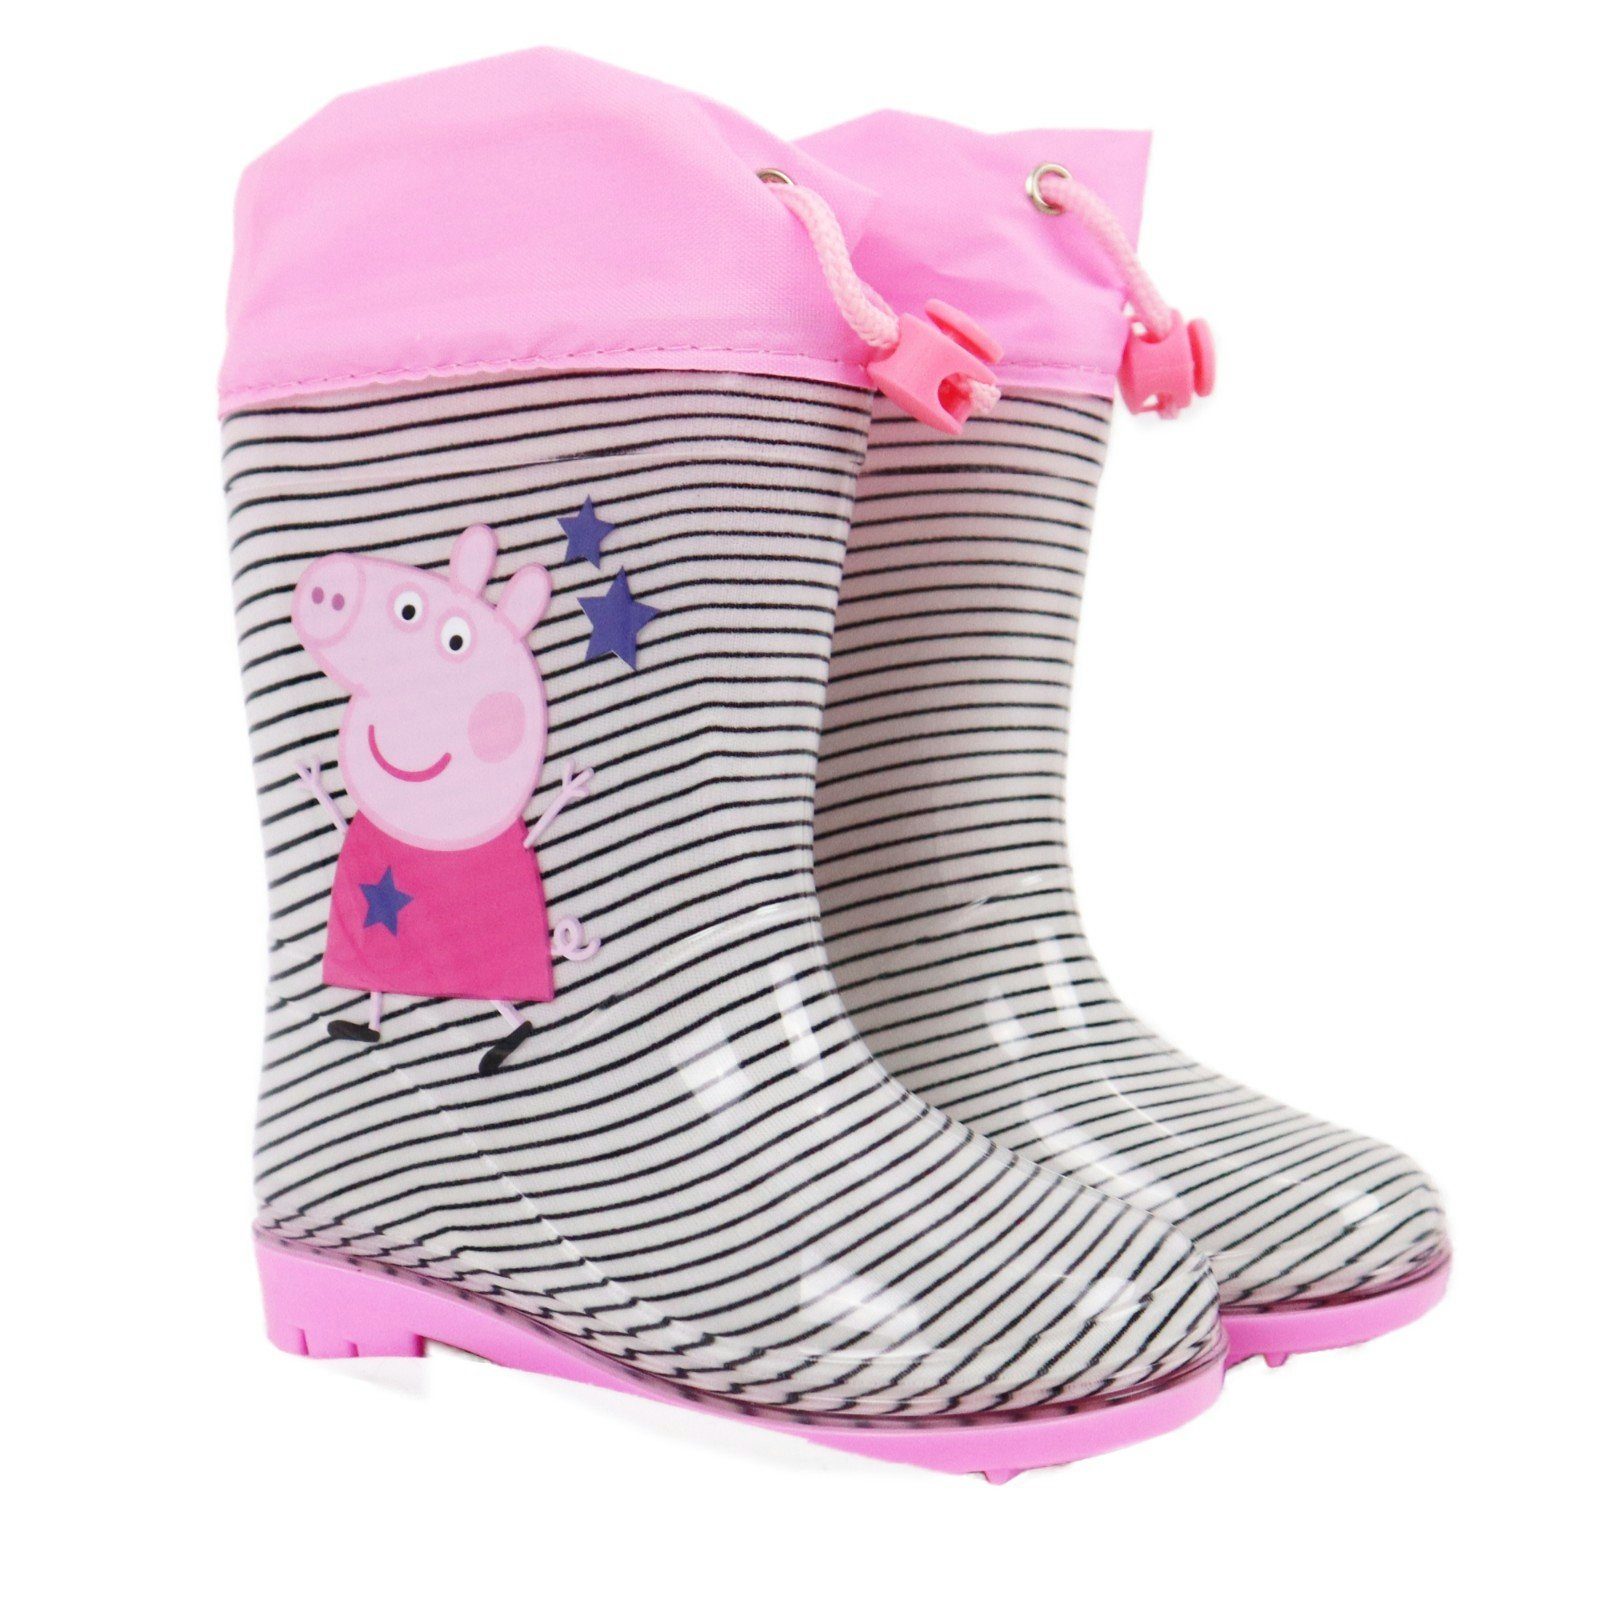 Peppa Pig »Peppa Wutz Kinder Regenstiefel« Gummistiefel Gr. 23 bis 32  online kaufen | OTTO